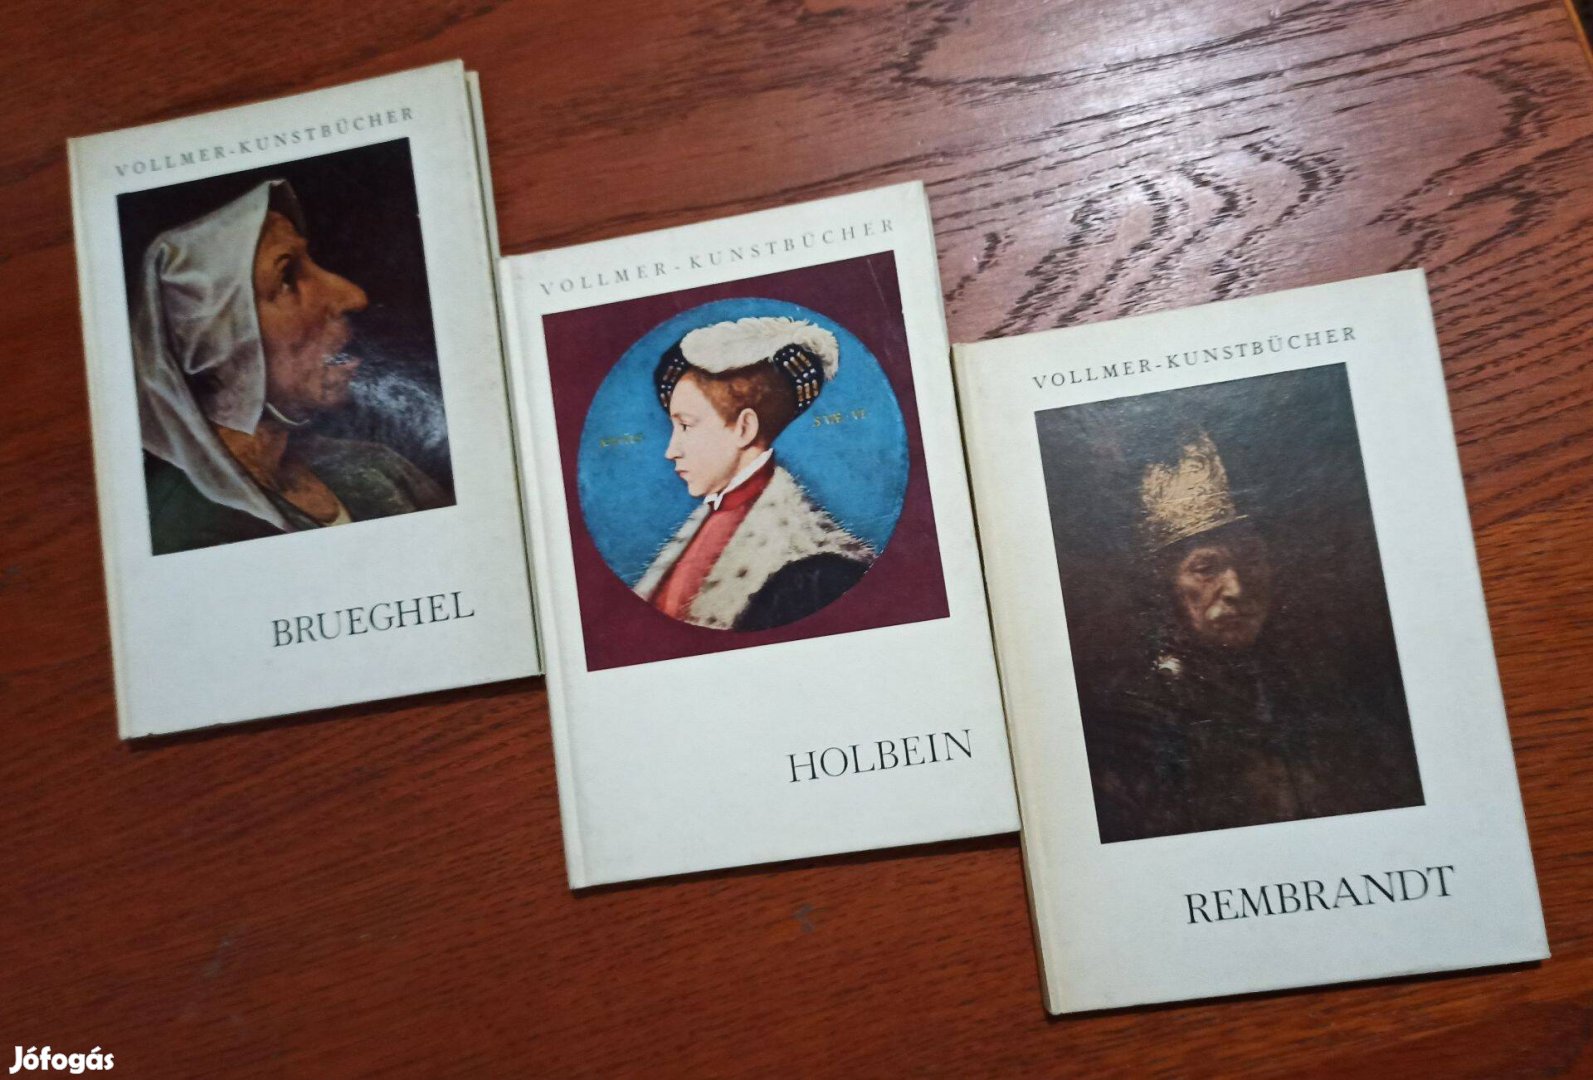 Vollmer Kunstbücher - Holbein / Rembrandt / Brueghel